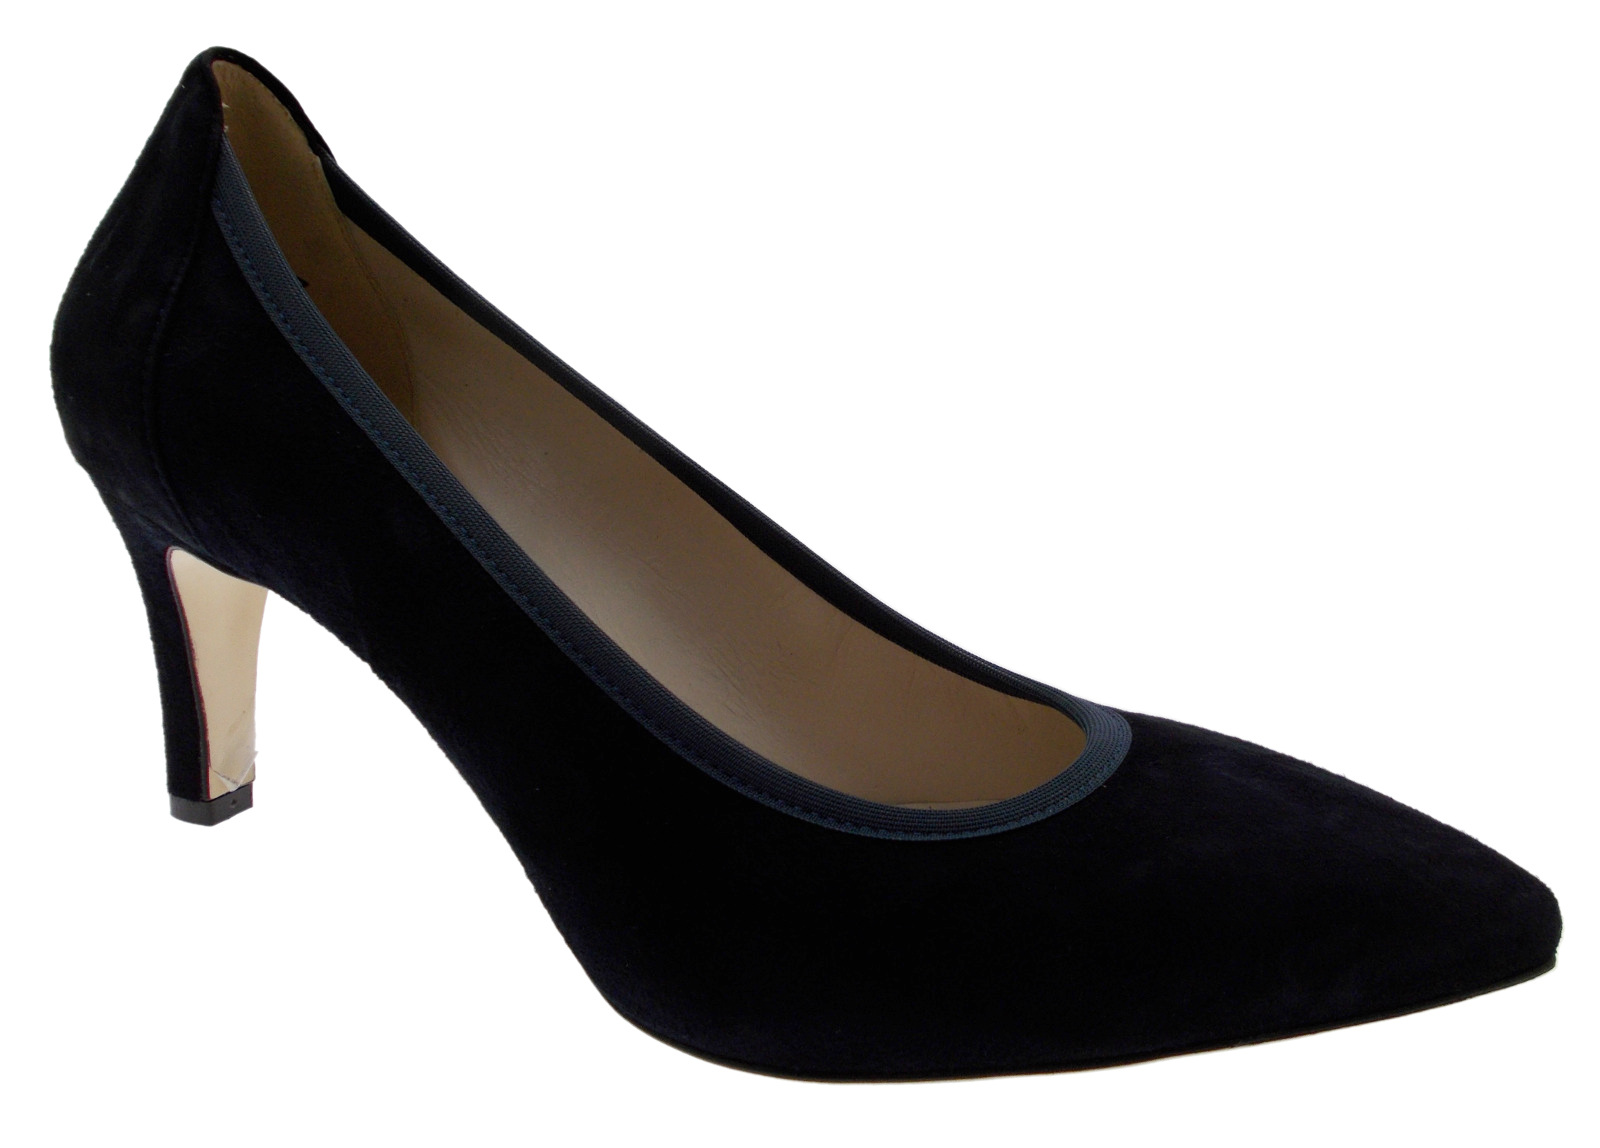 D078E women's classic decolt shoe blue suede leather Melluso | eBay